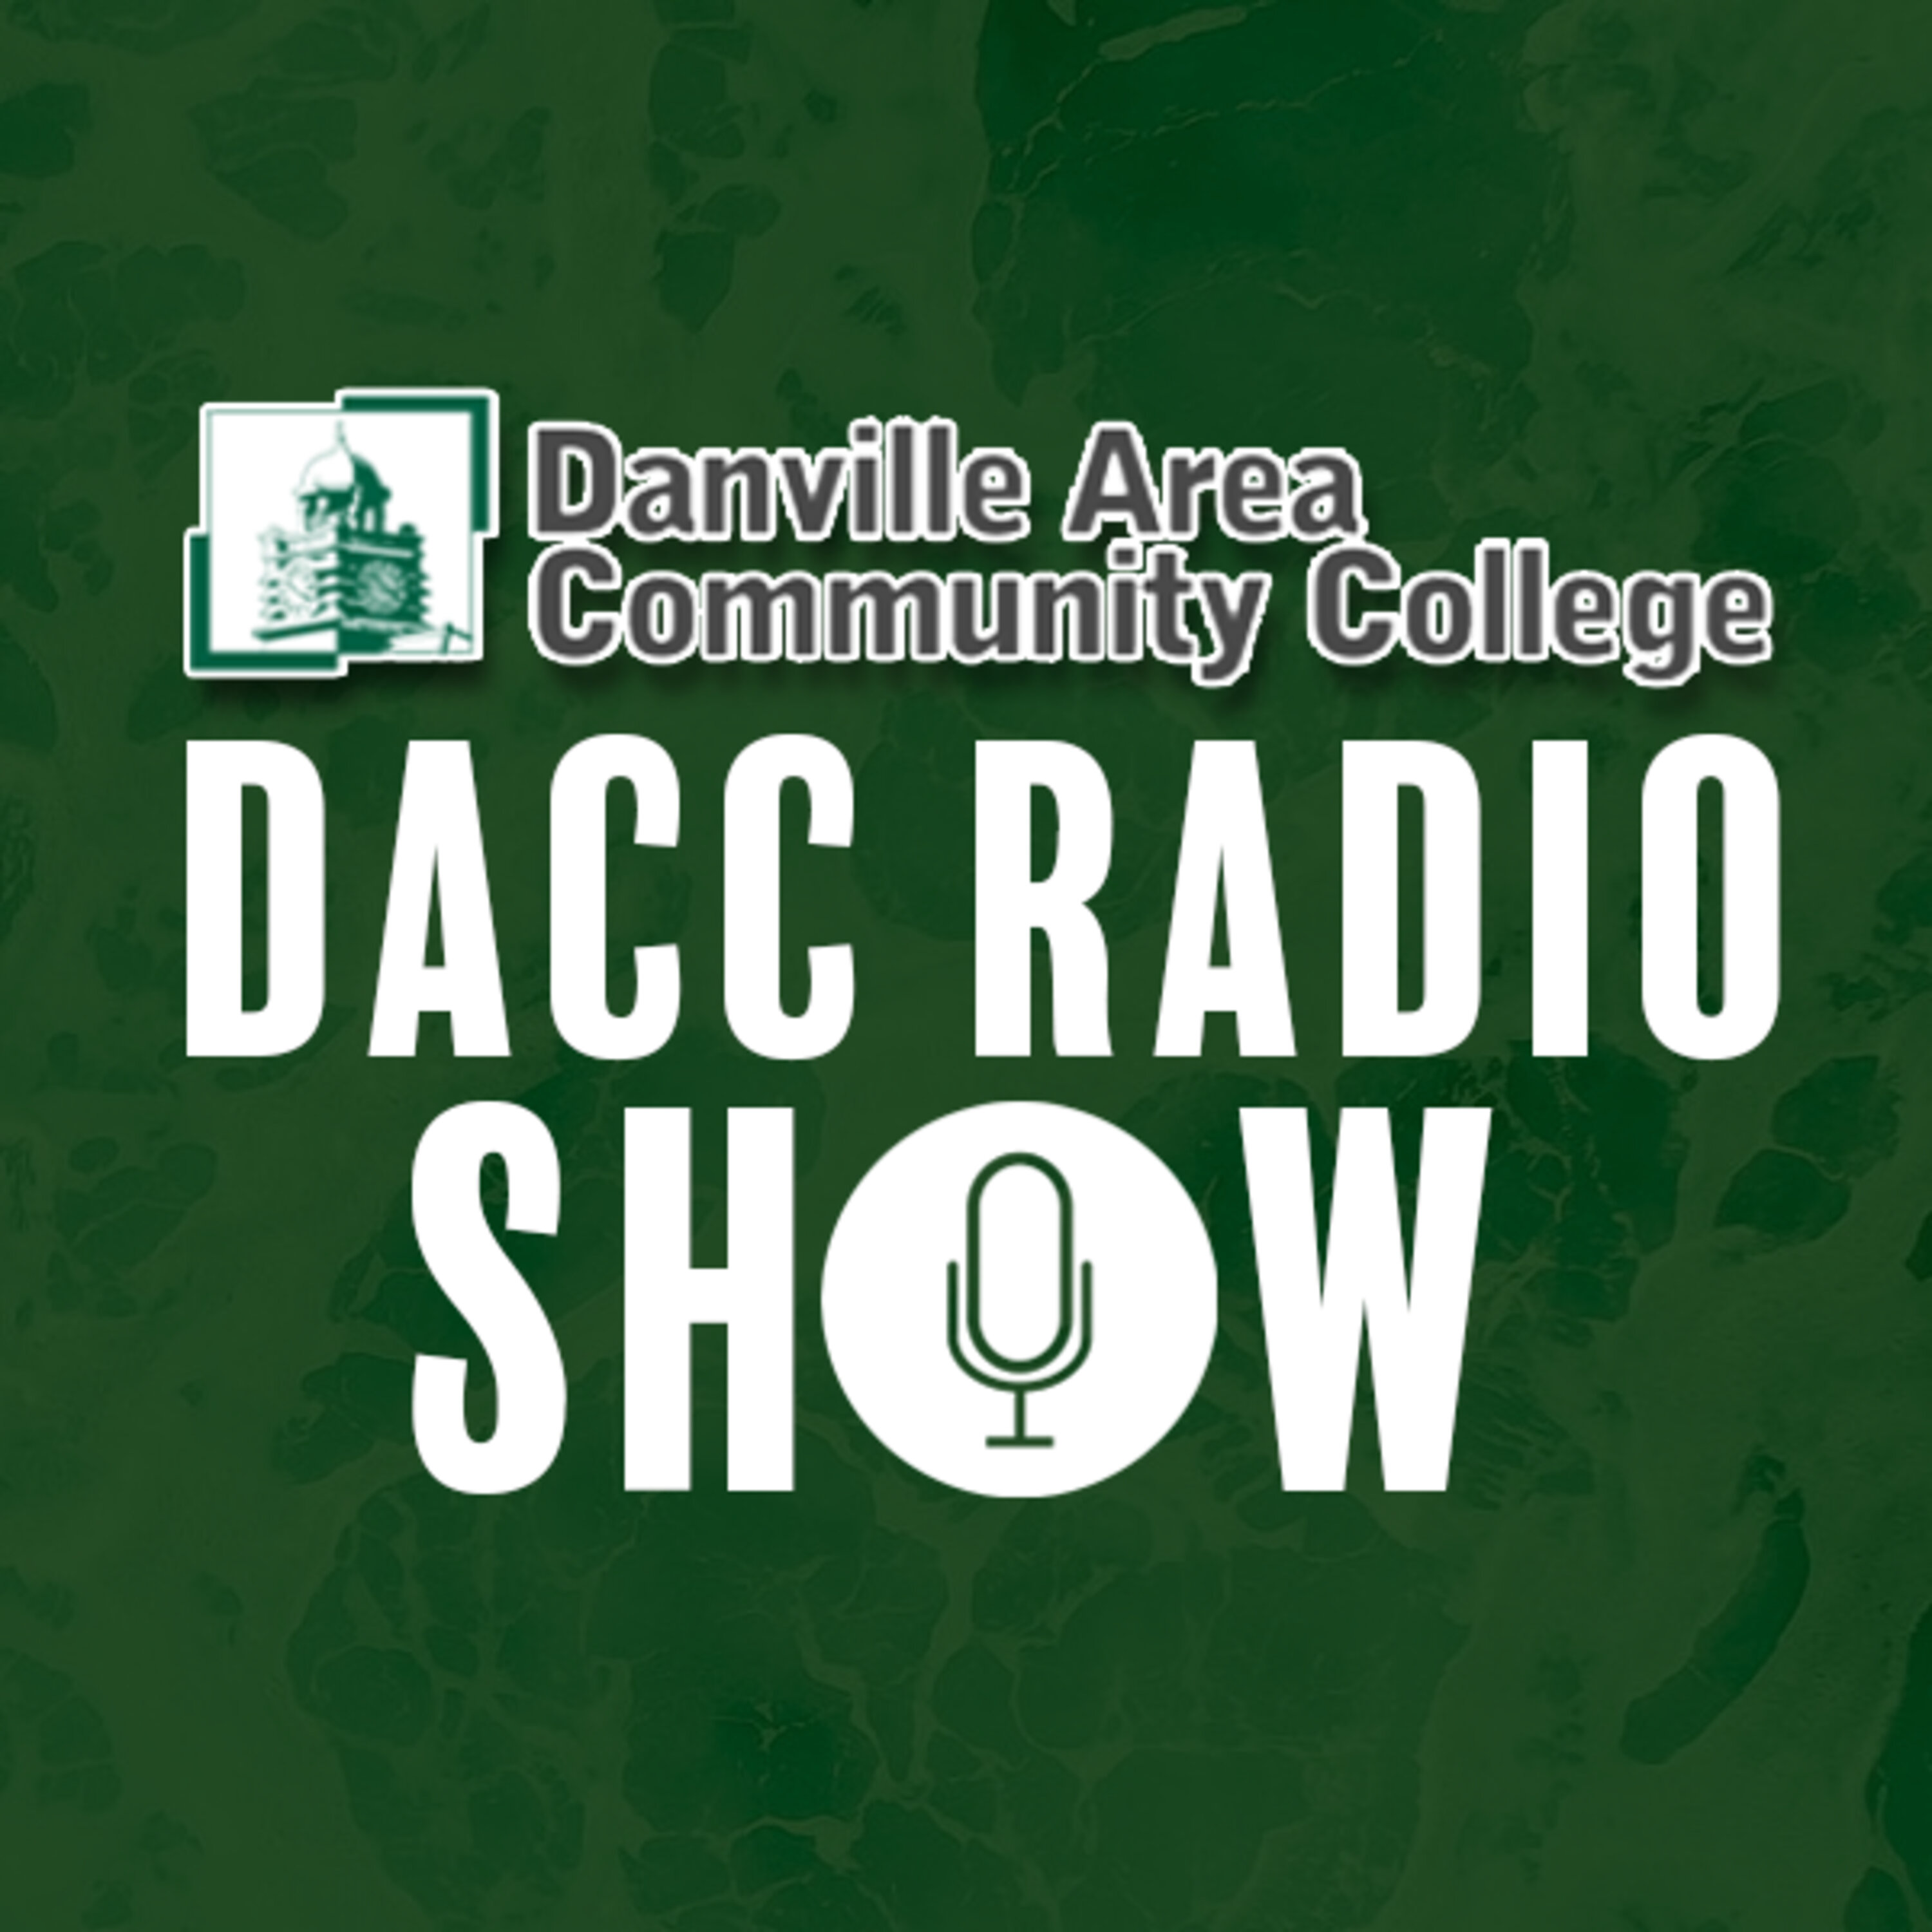 DACC Radio Show March 25 -  Small Business Development Center